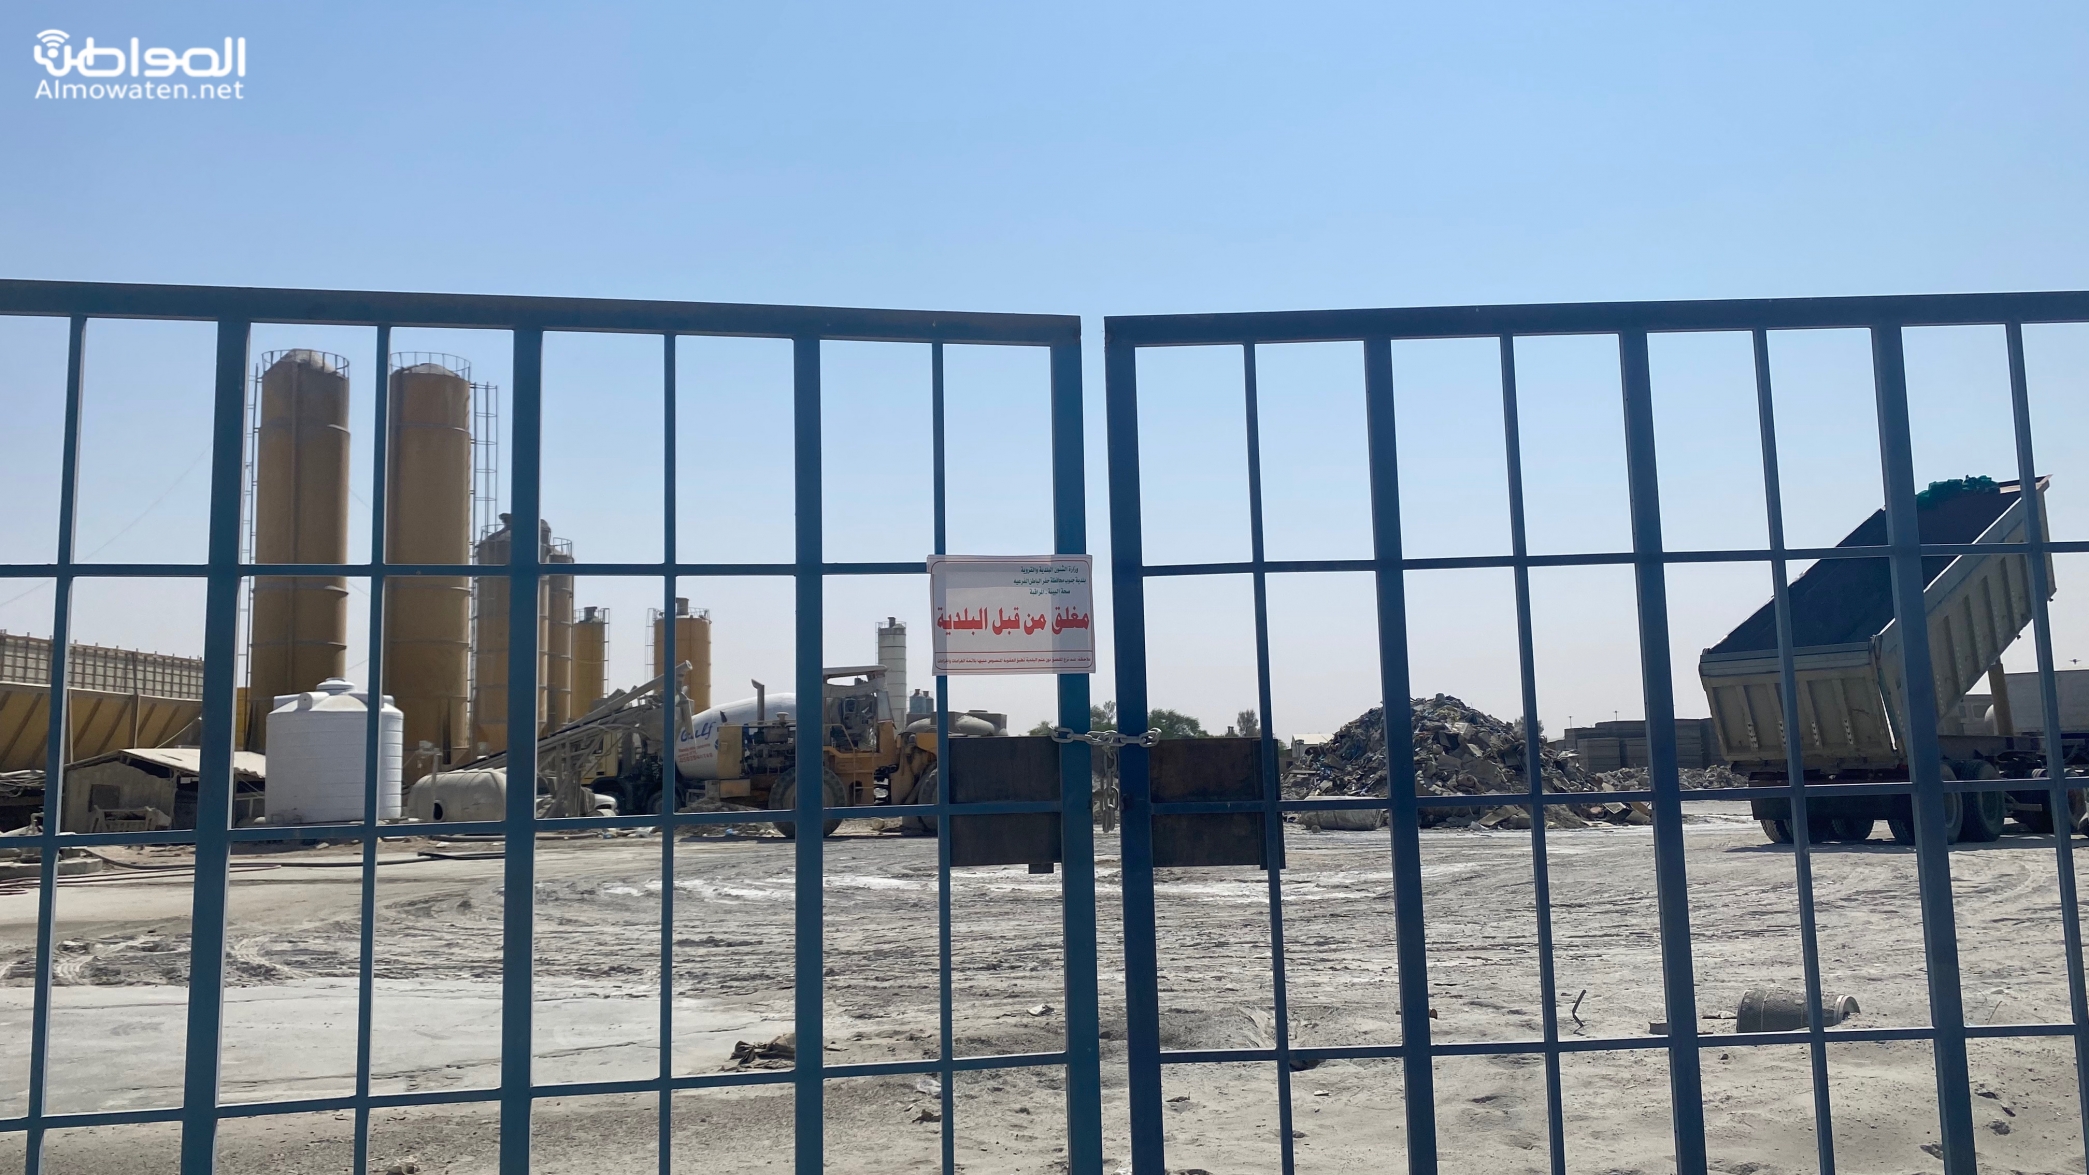 إغلاق المصانع المجاورة لحي الصفا بحفر الباطن بعد تقرير “المواطن”